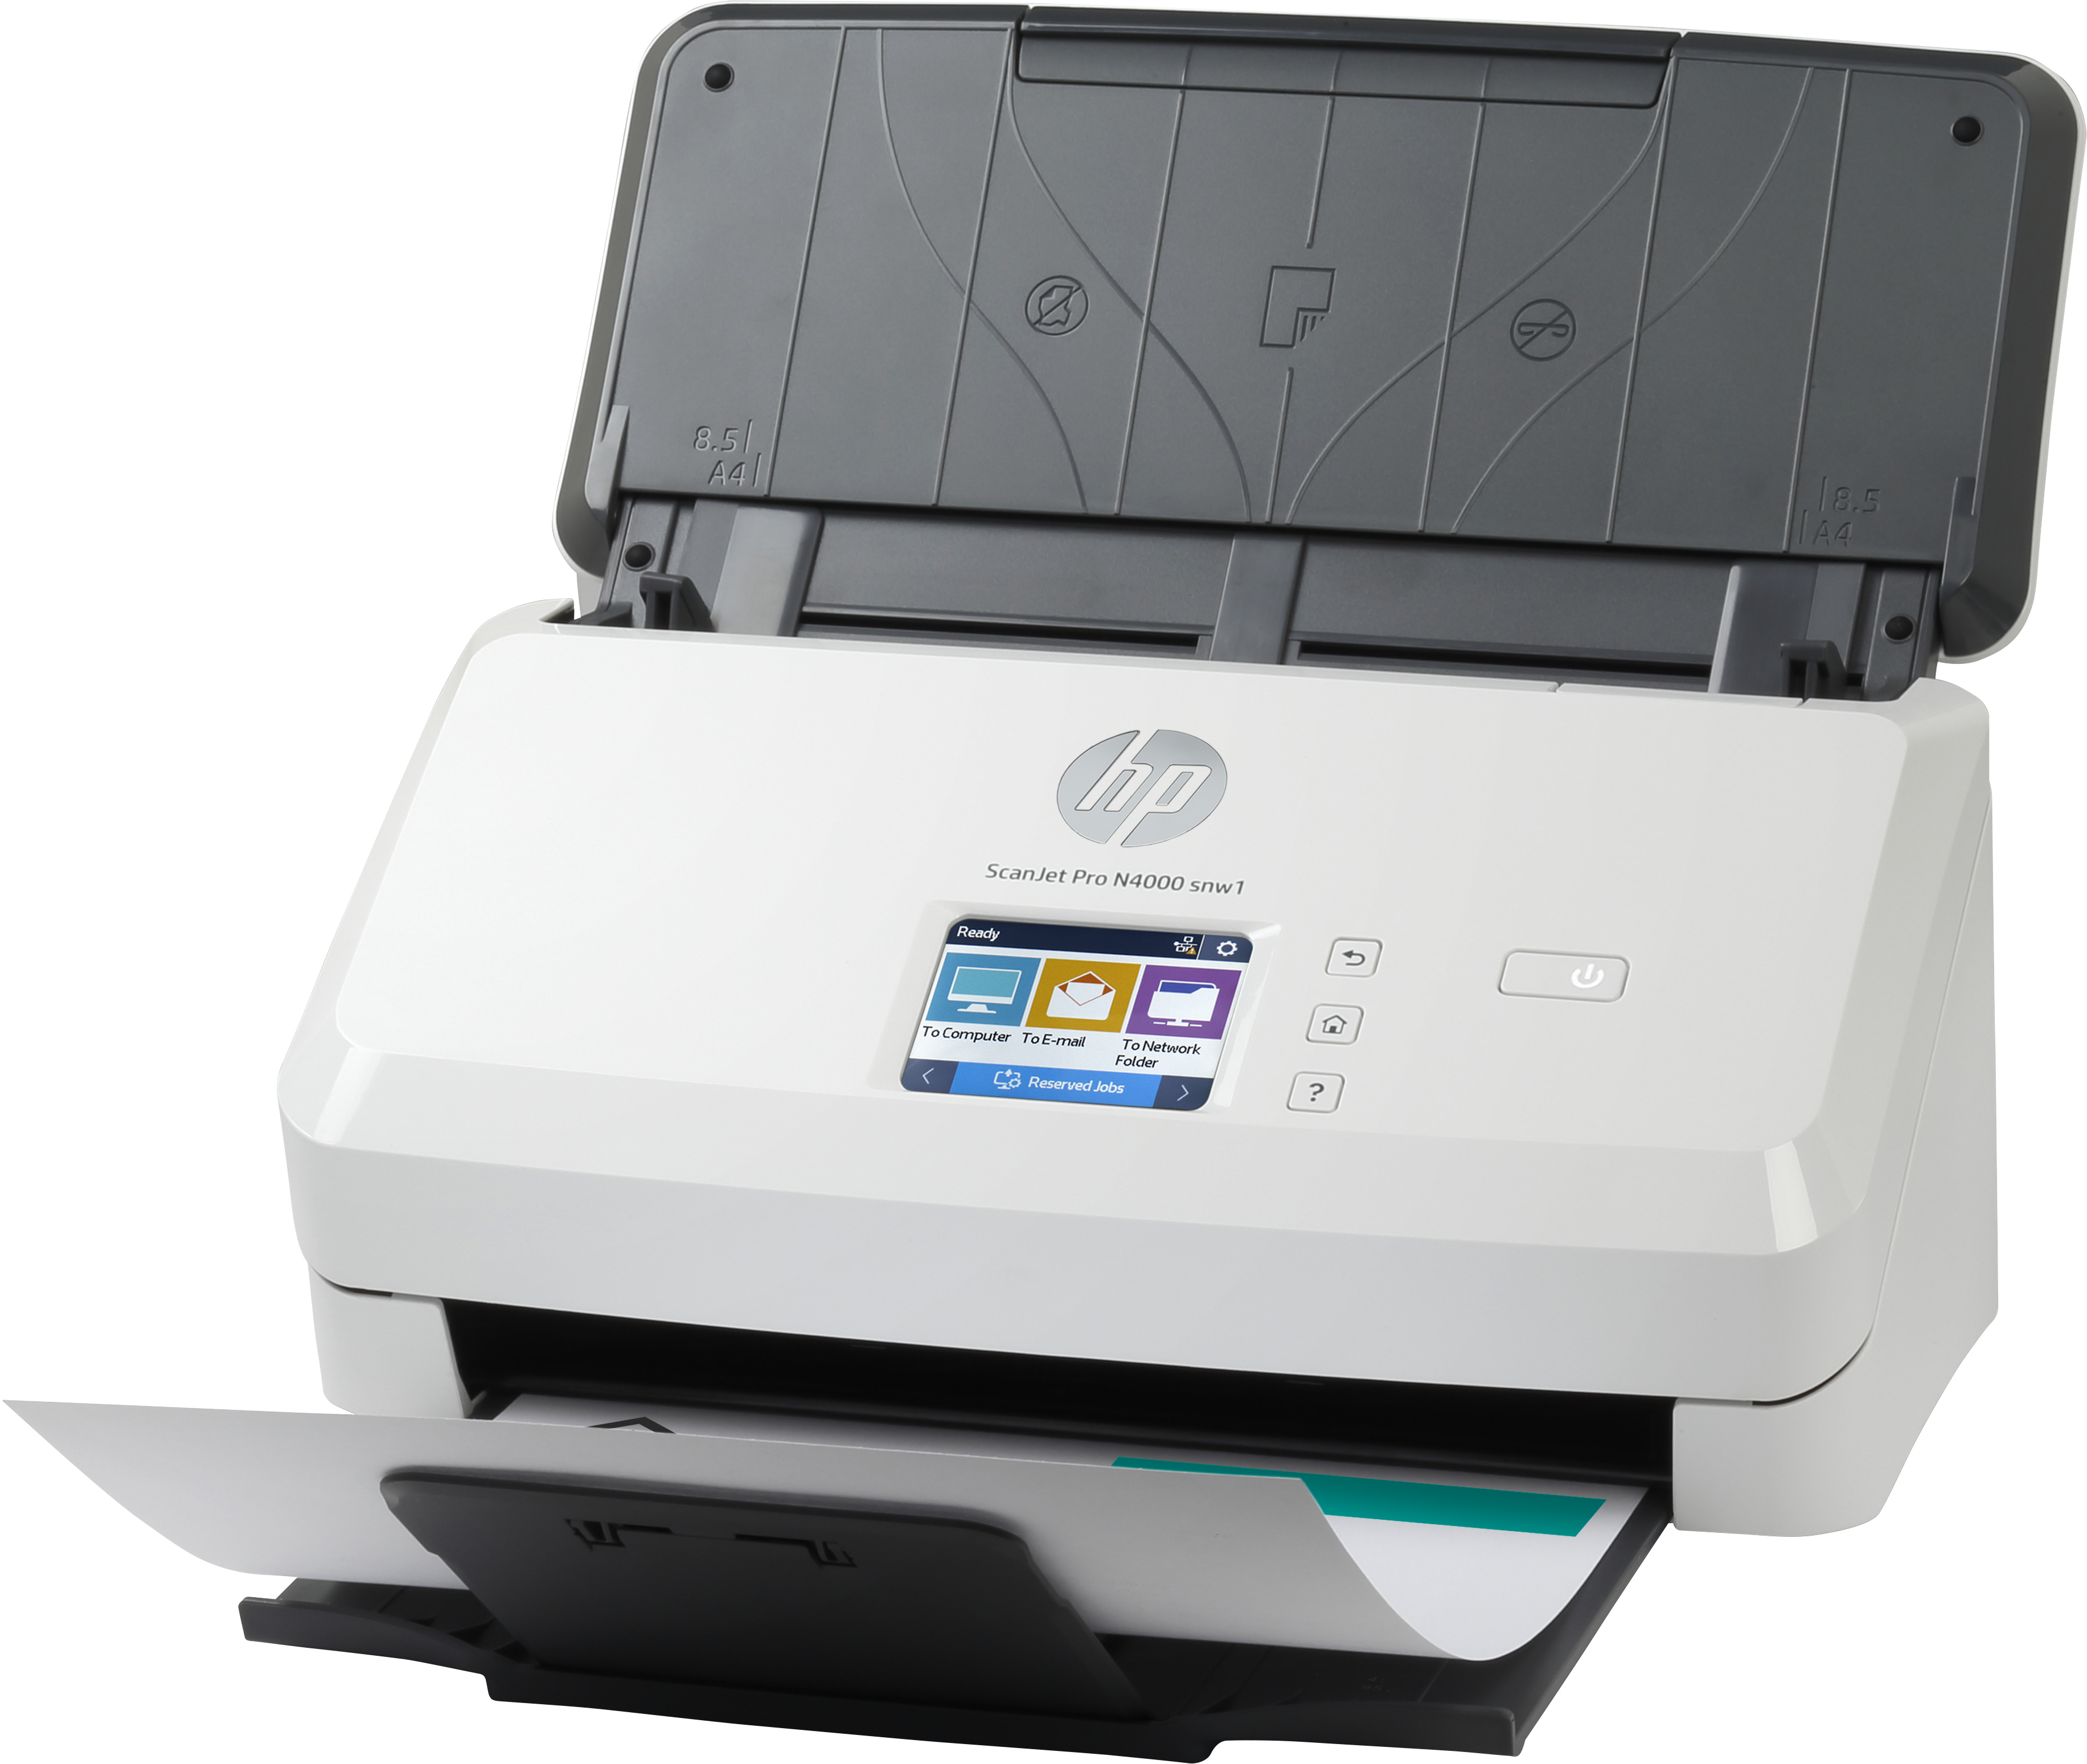 HP Scanjet Pro N4000 snw1 Sheet-feed Scanner Scanner mit Vorlageneinzug 600 x 600 DPI A4 Schwarz, Weiß